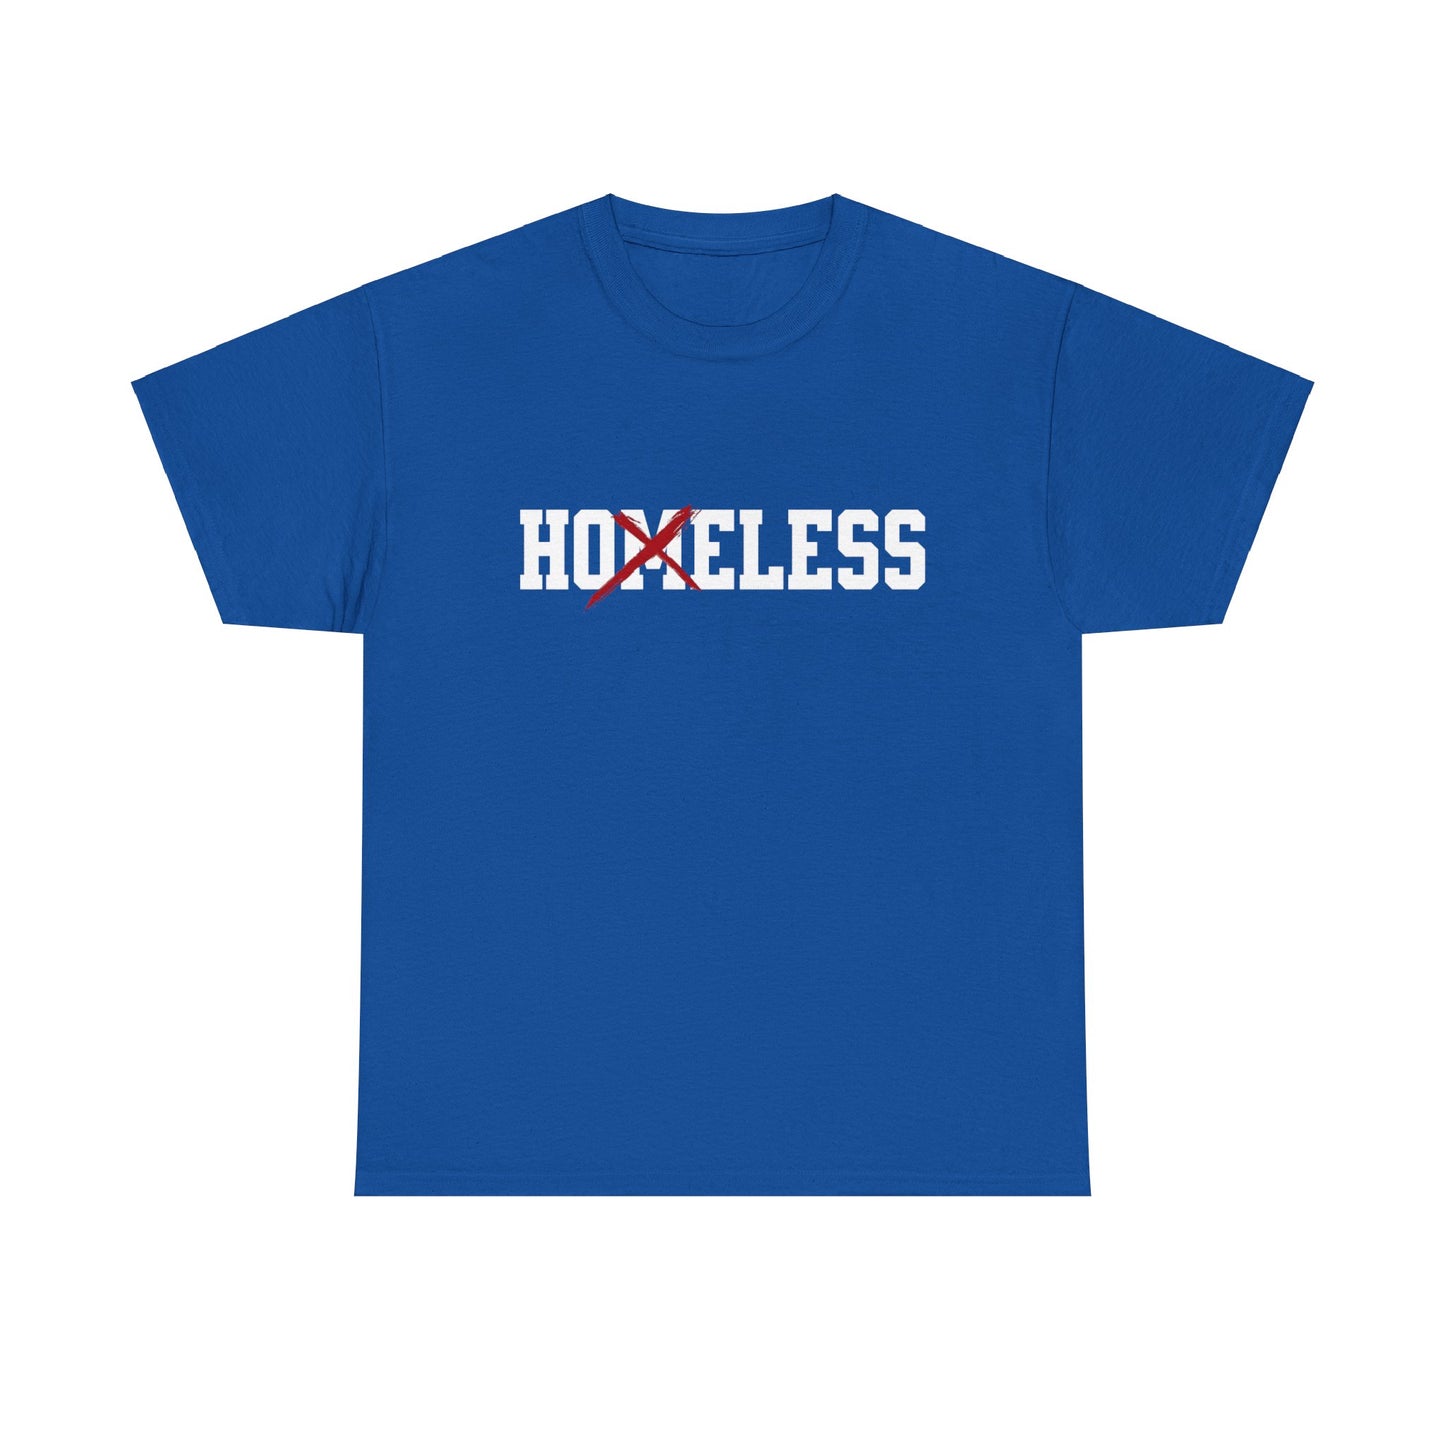 Unisex Shirt in blau mit dem Spruch Homeless drauf. Das M ist durchgestrichen; also steht auf dem Shirt Hoeless.